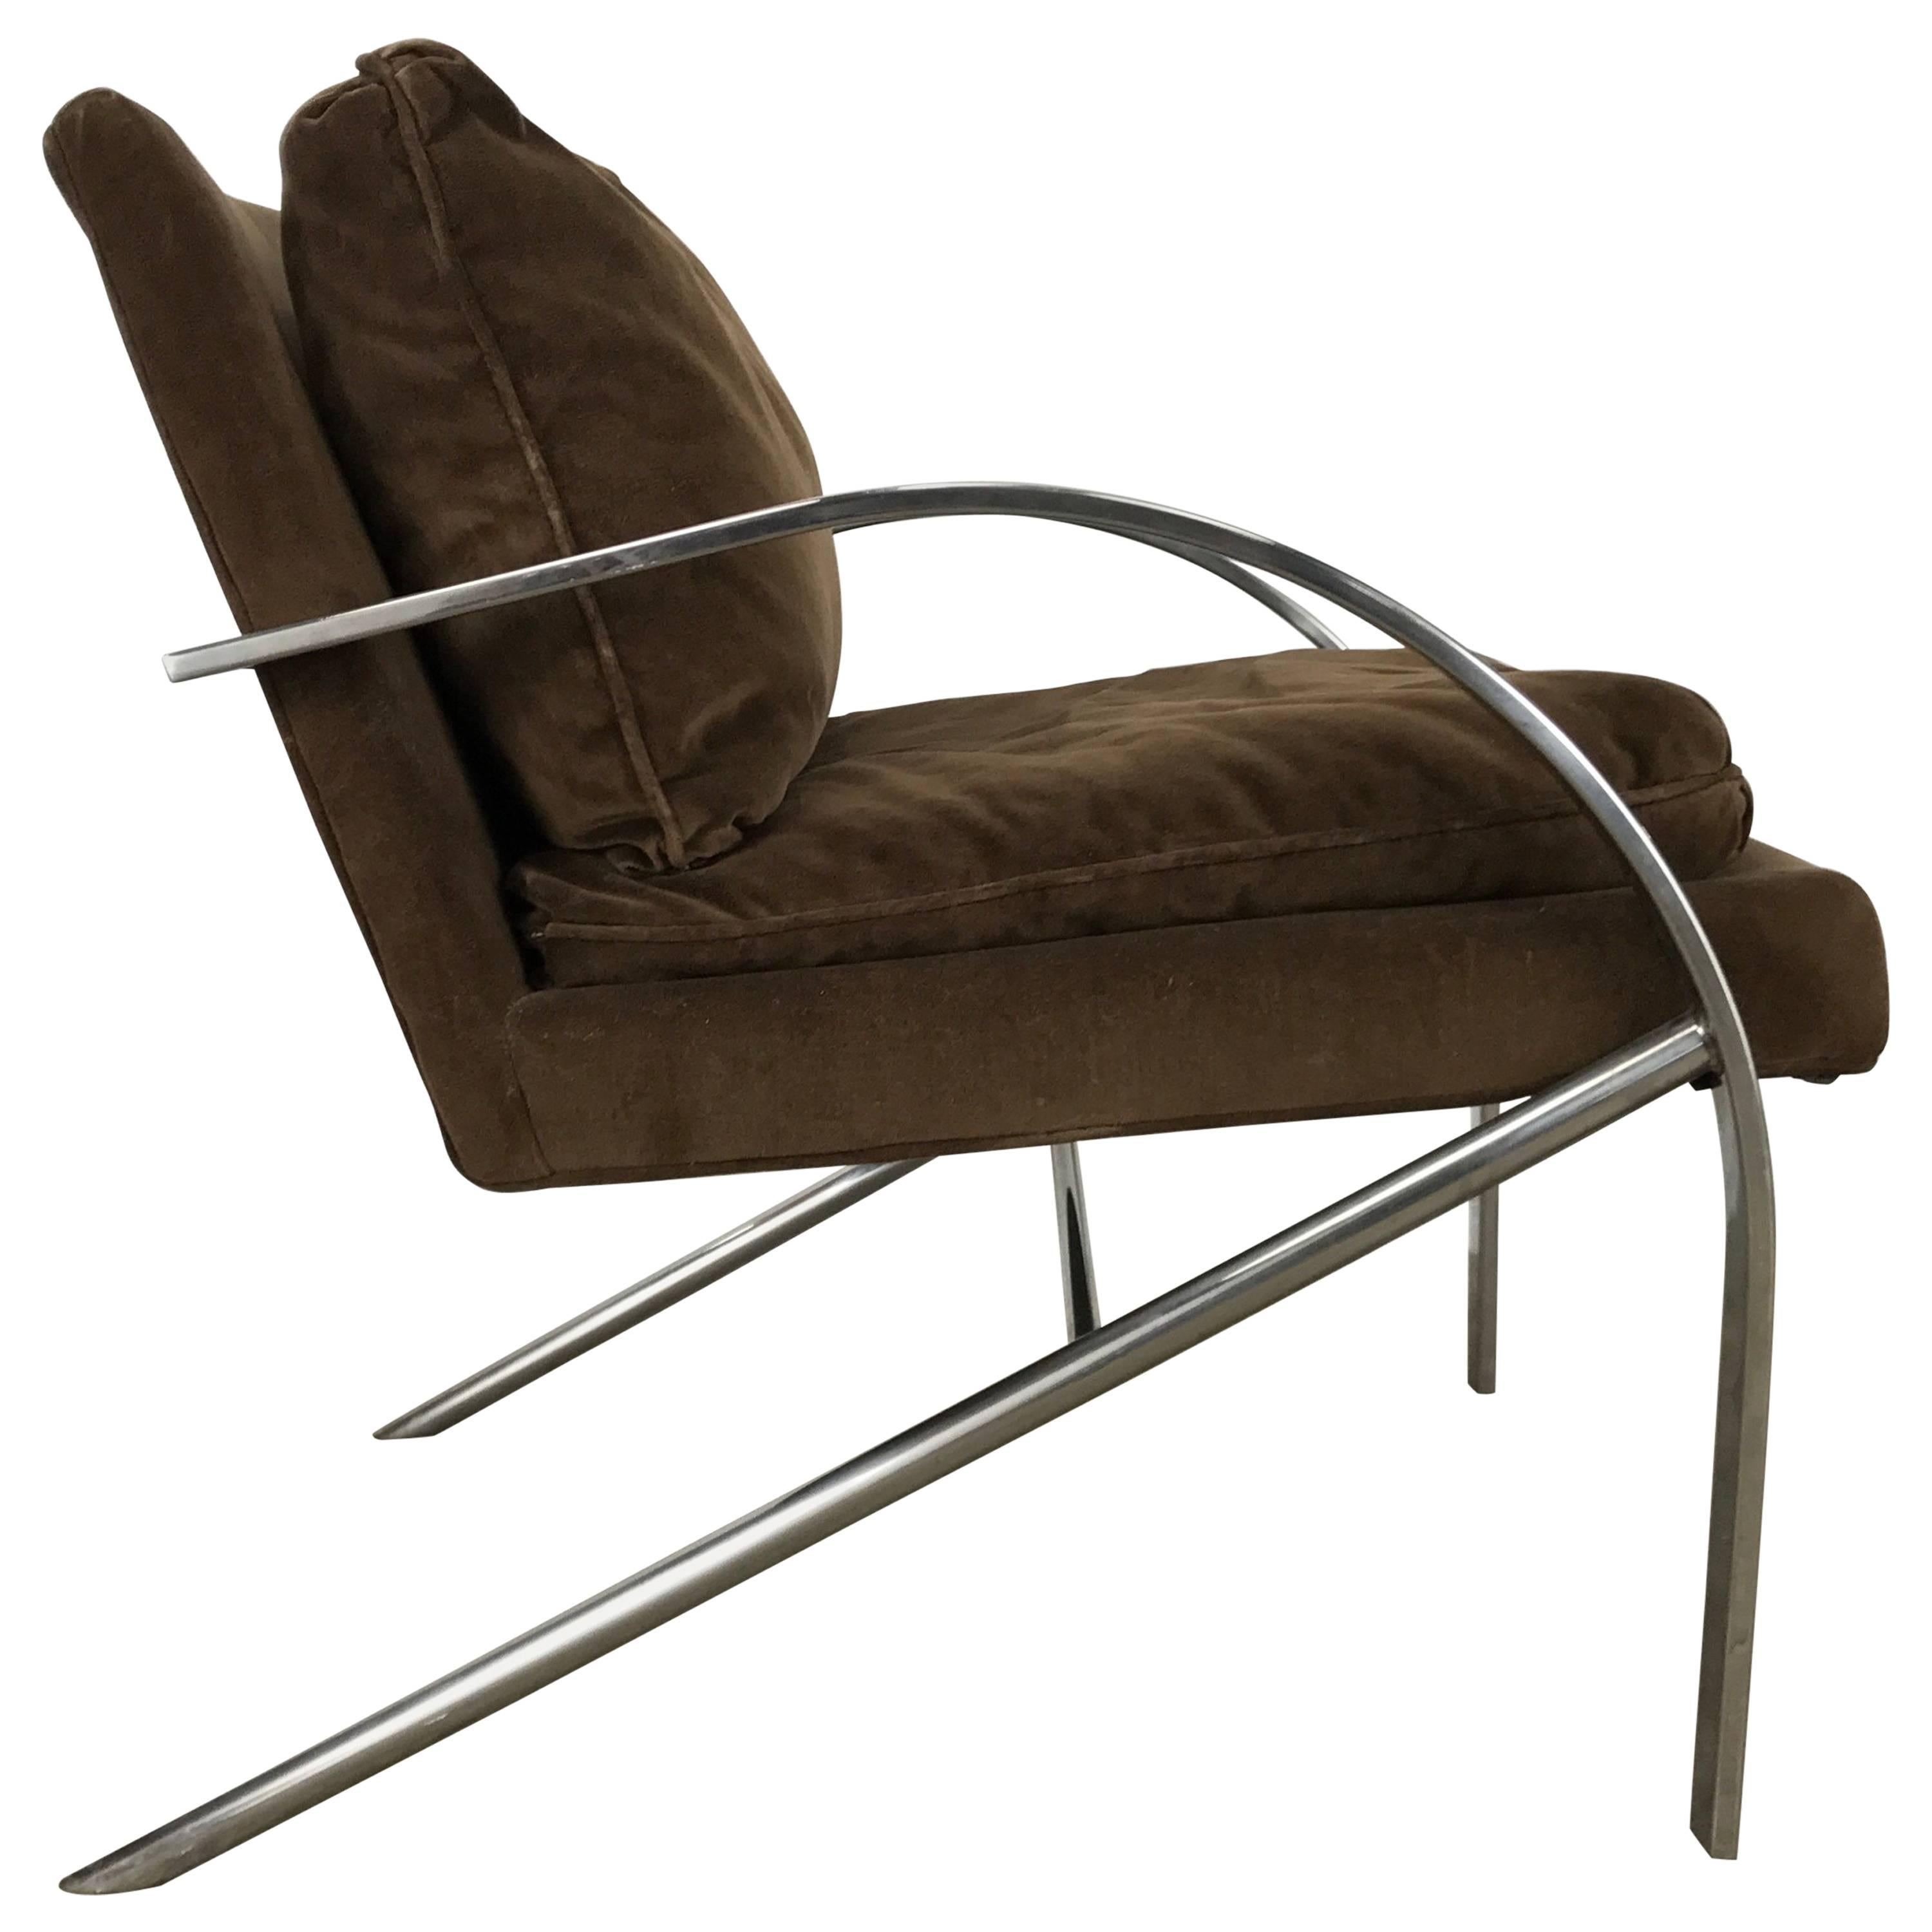 Streamline Modern Aluminium and Velvet Lounge Chair by Bernhardt